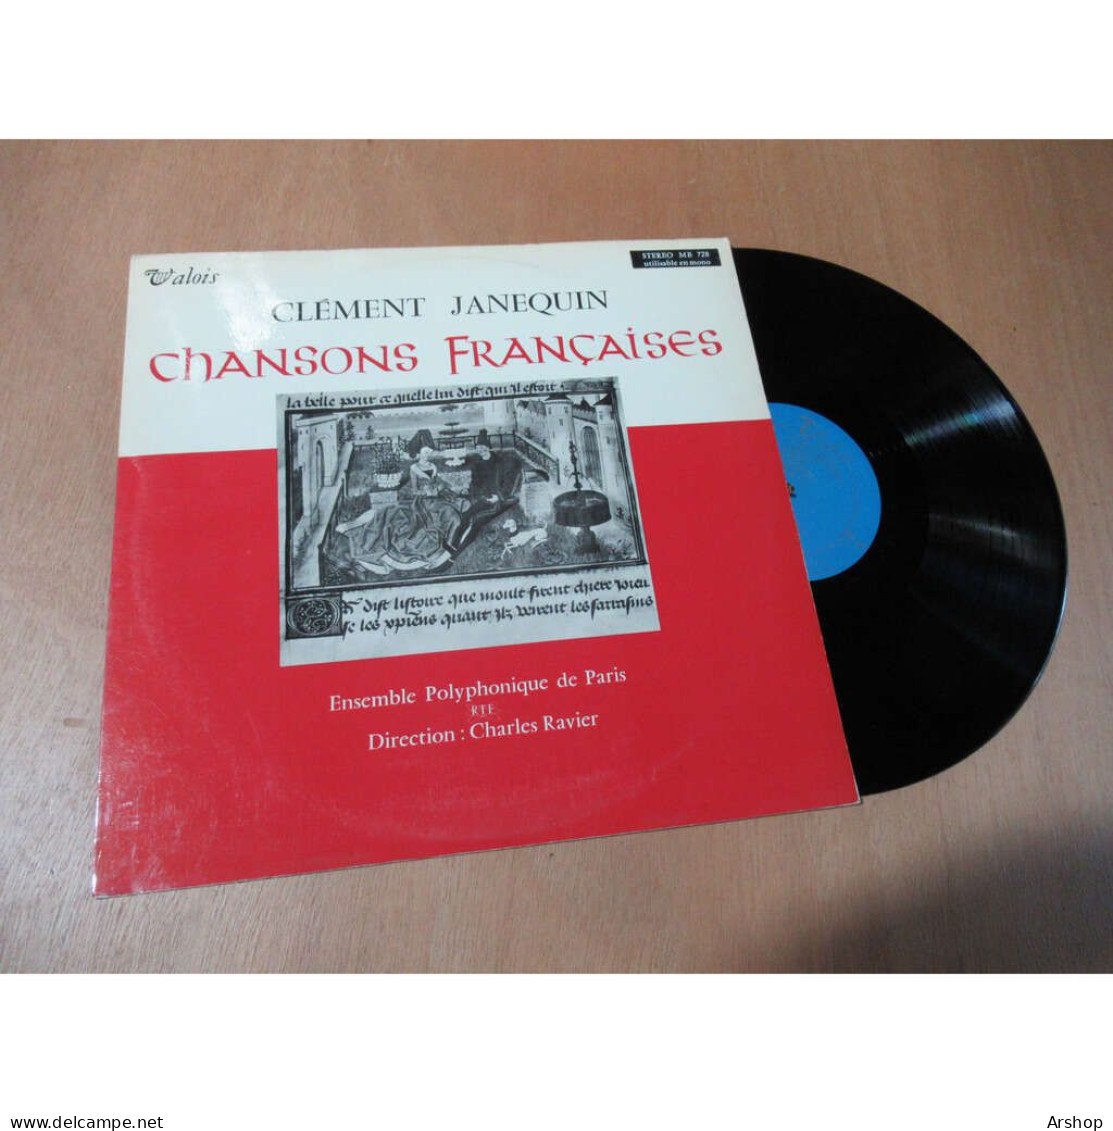 CLÉMENT JANEQUIN / ENSEMBLE POLYPHONIQUE DE PARIS / CHARLES RAVIER Chansons Françaises VALOIS MB 728 Lp 1961 - Classique